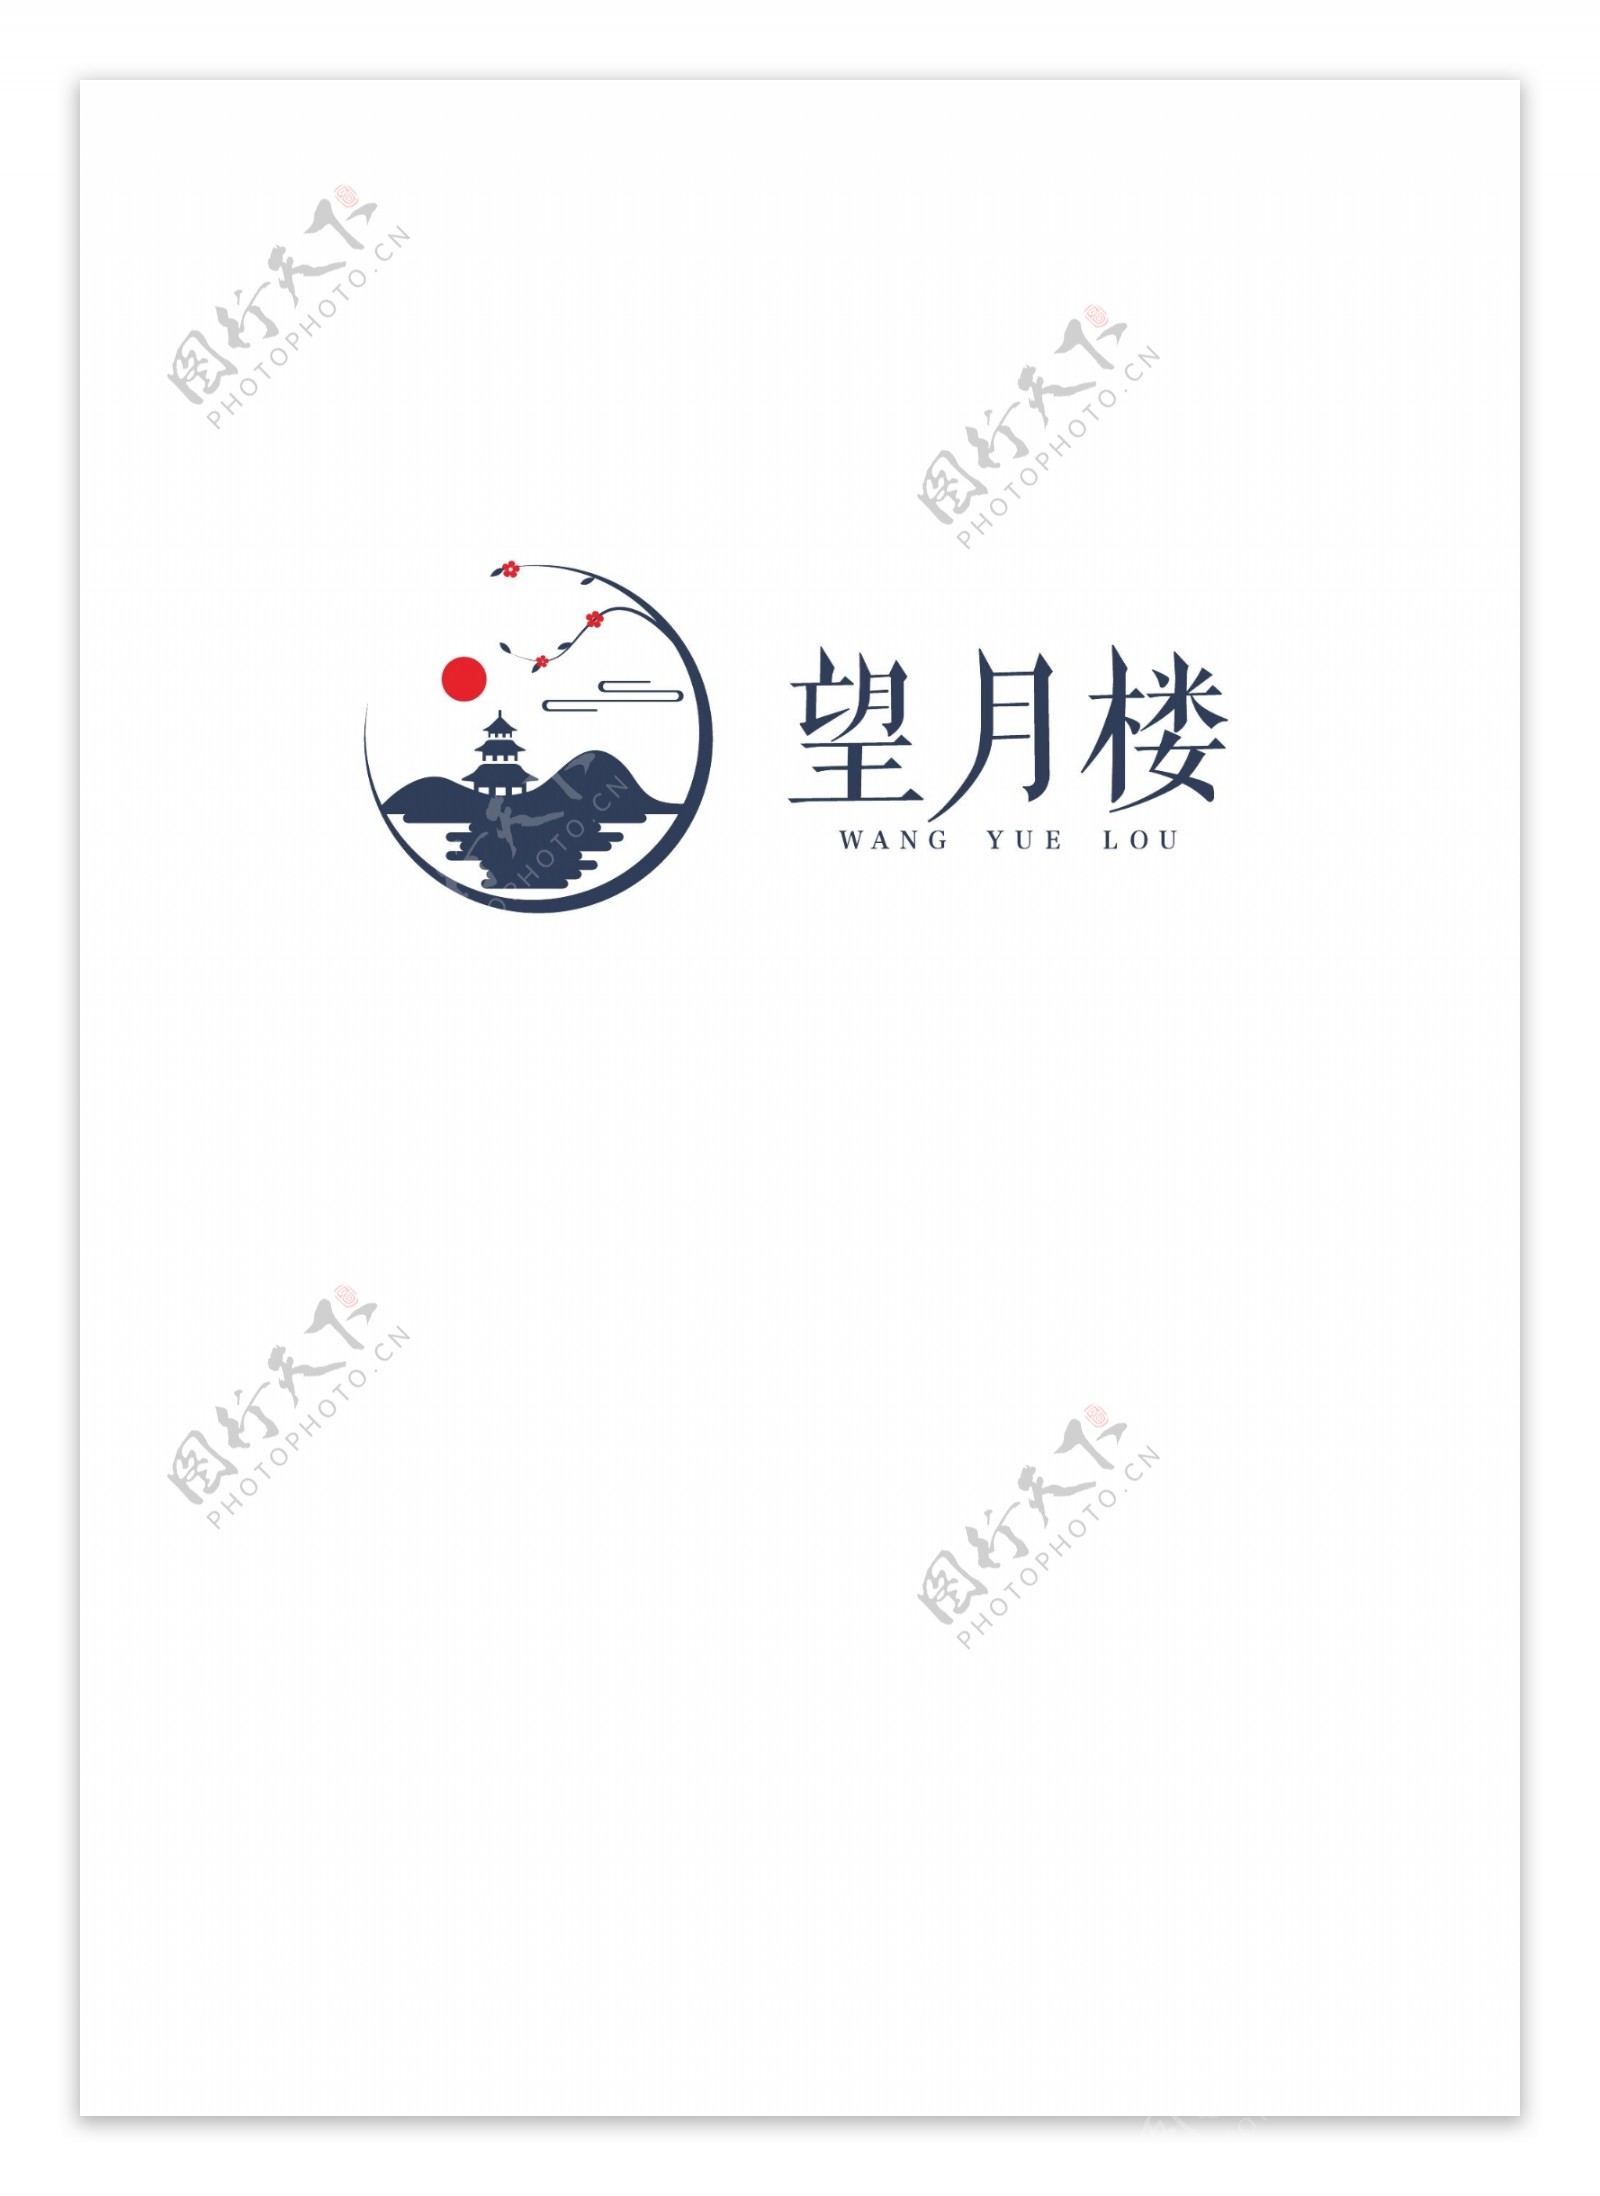 中式风格旅游地标logo设计